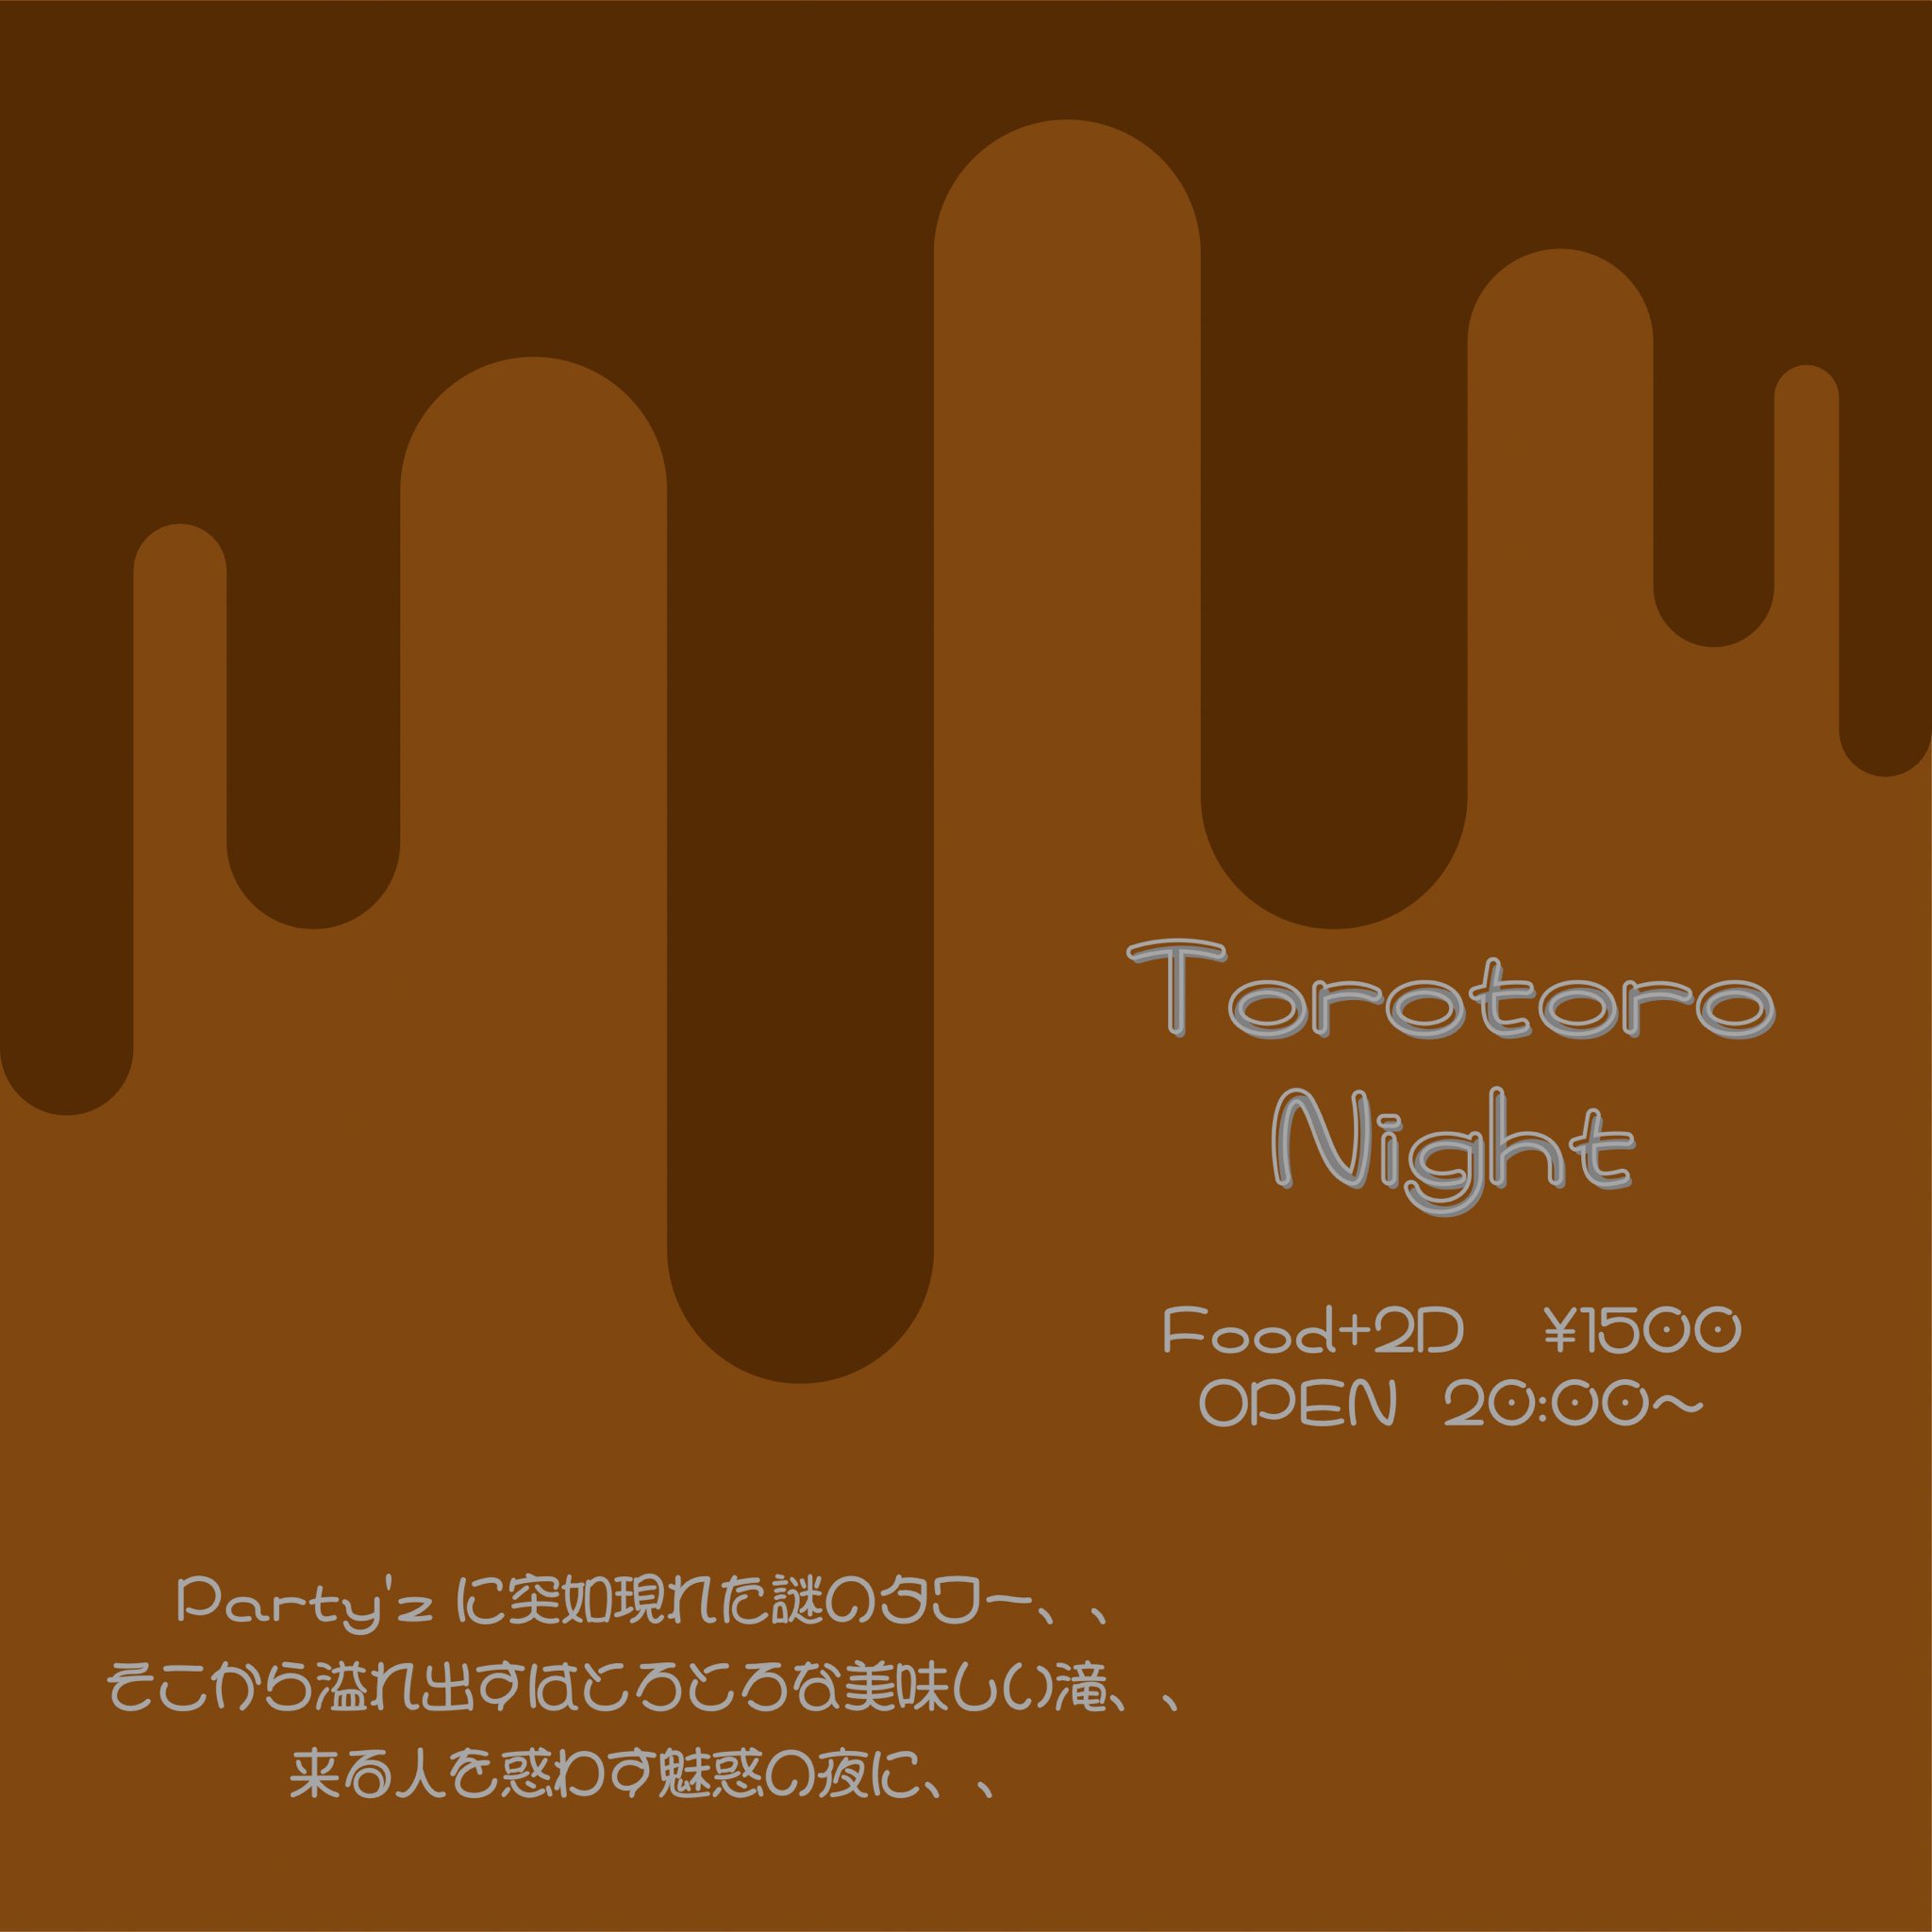 Torotoro Night